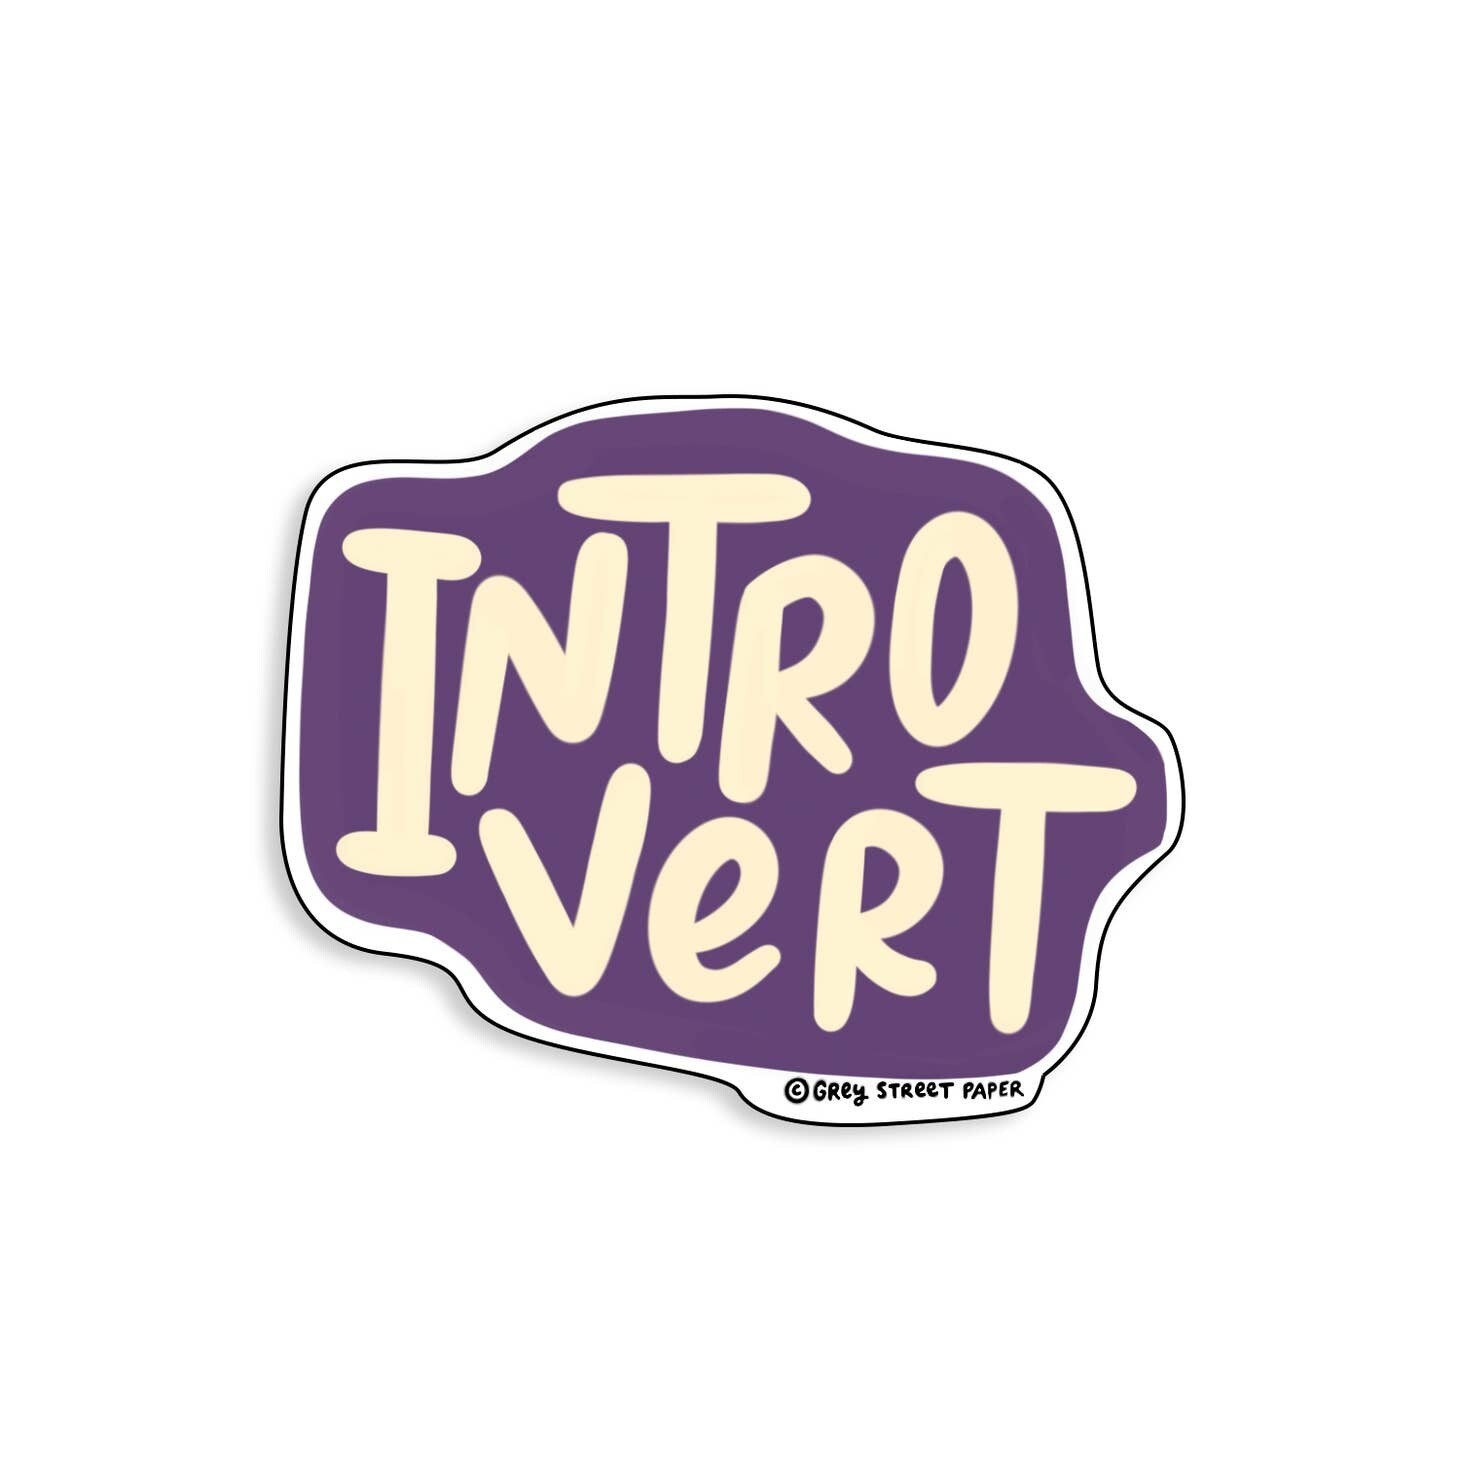 Introvert Sticker